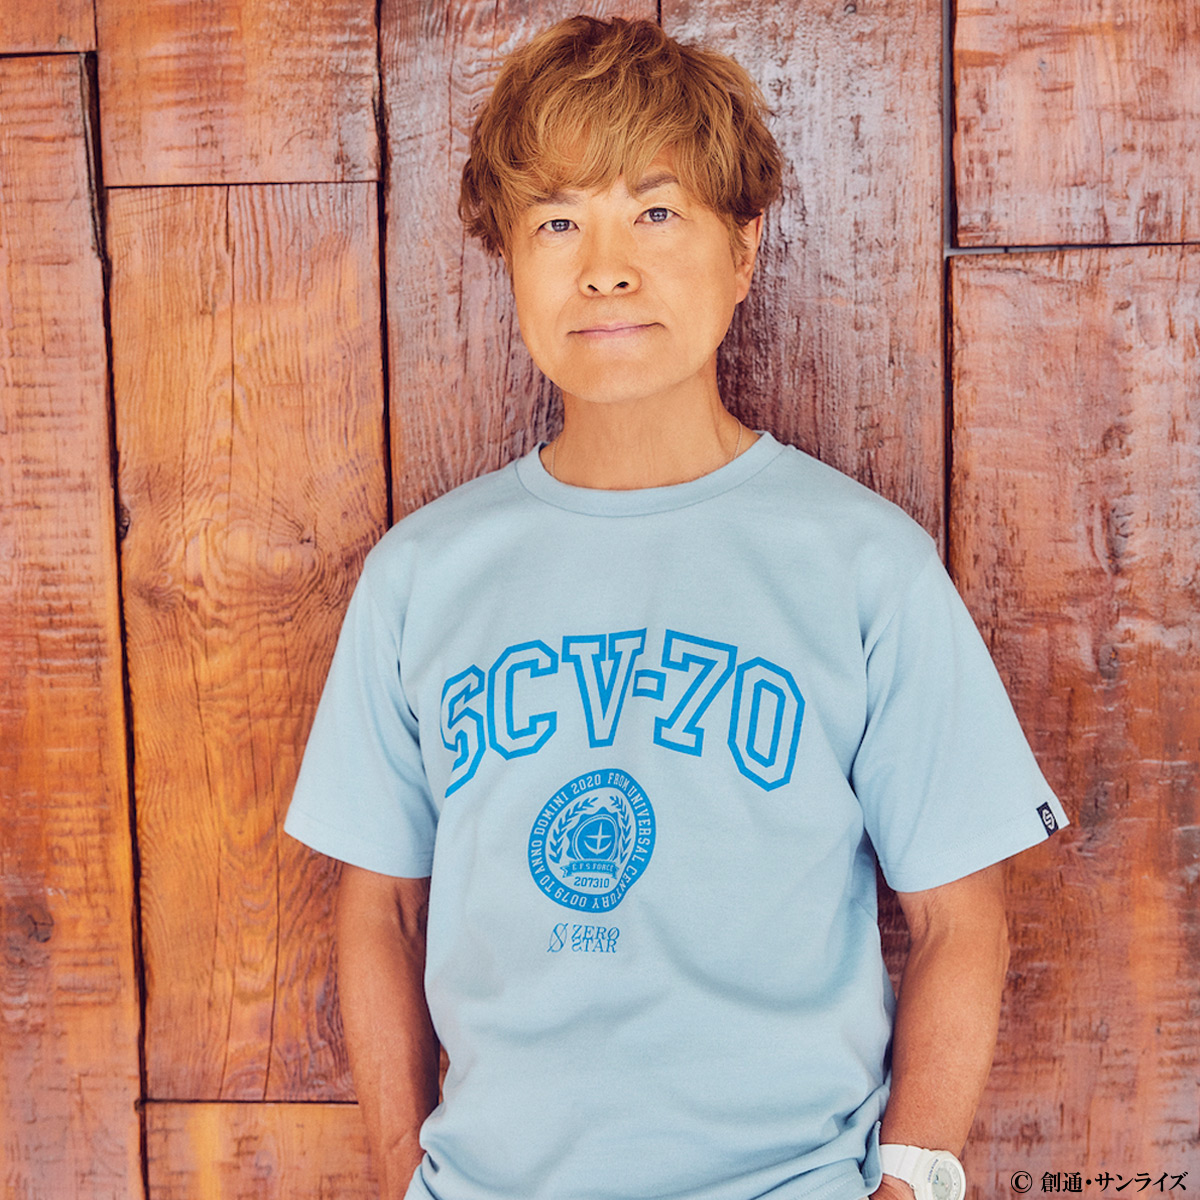 アムロ・レイ役を務める声優 古谷徹さんが手がける アパレルブランド「ZERO STAR」と『機動戦士ガンダム』 のコラボコレクションを発売